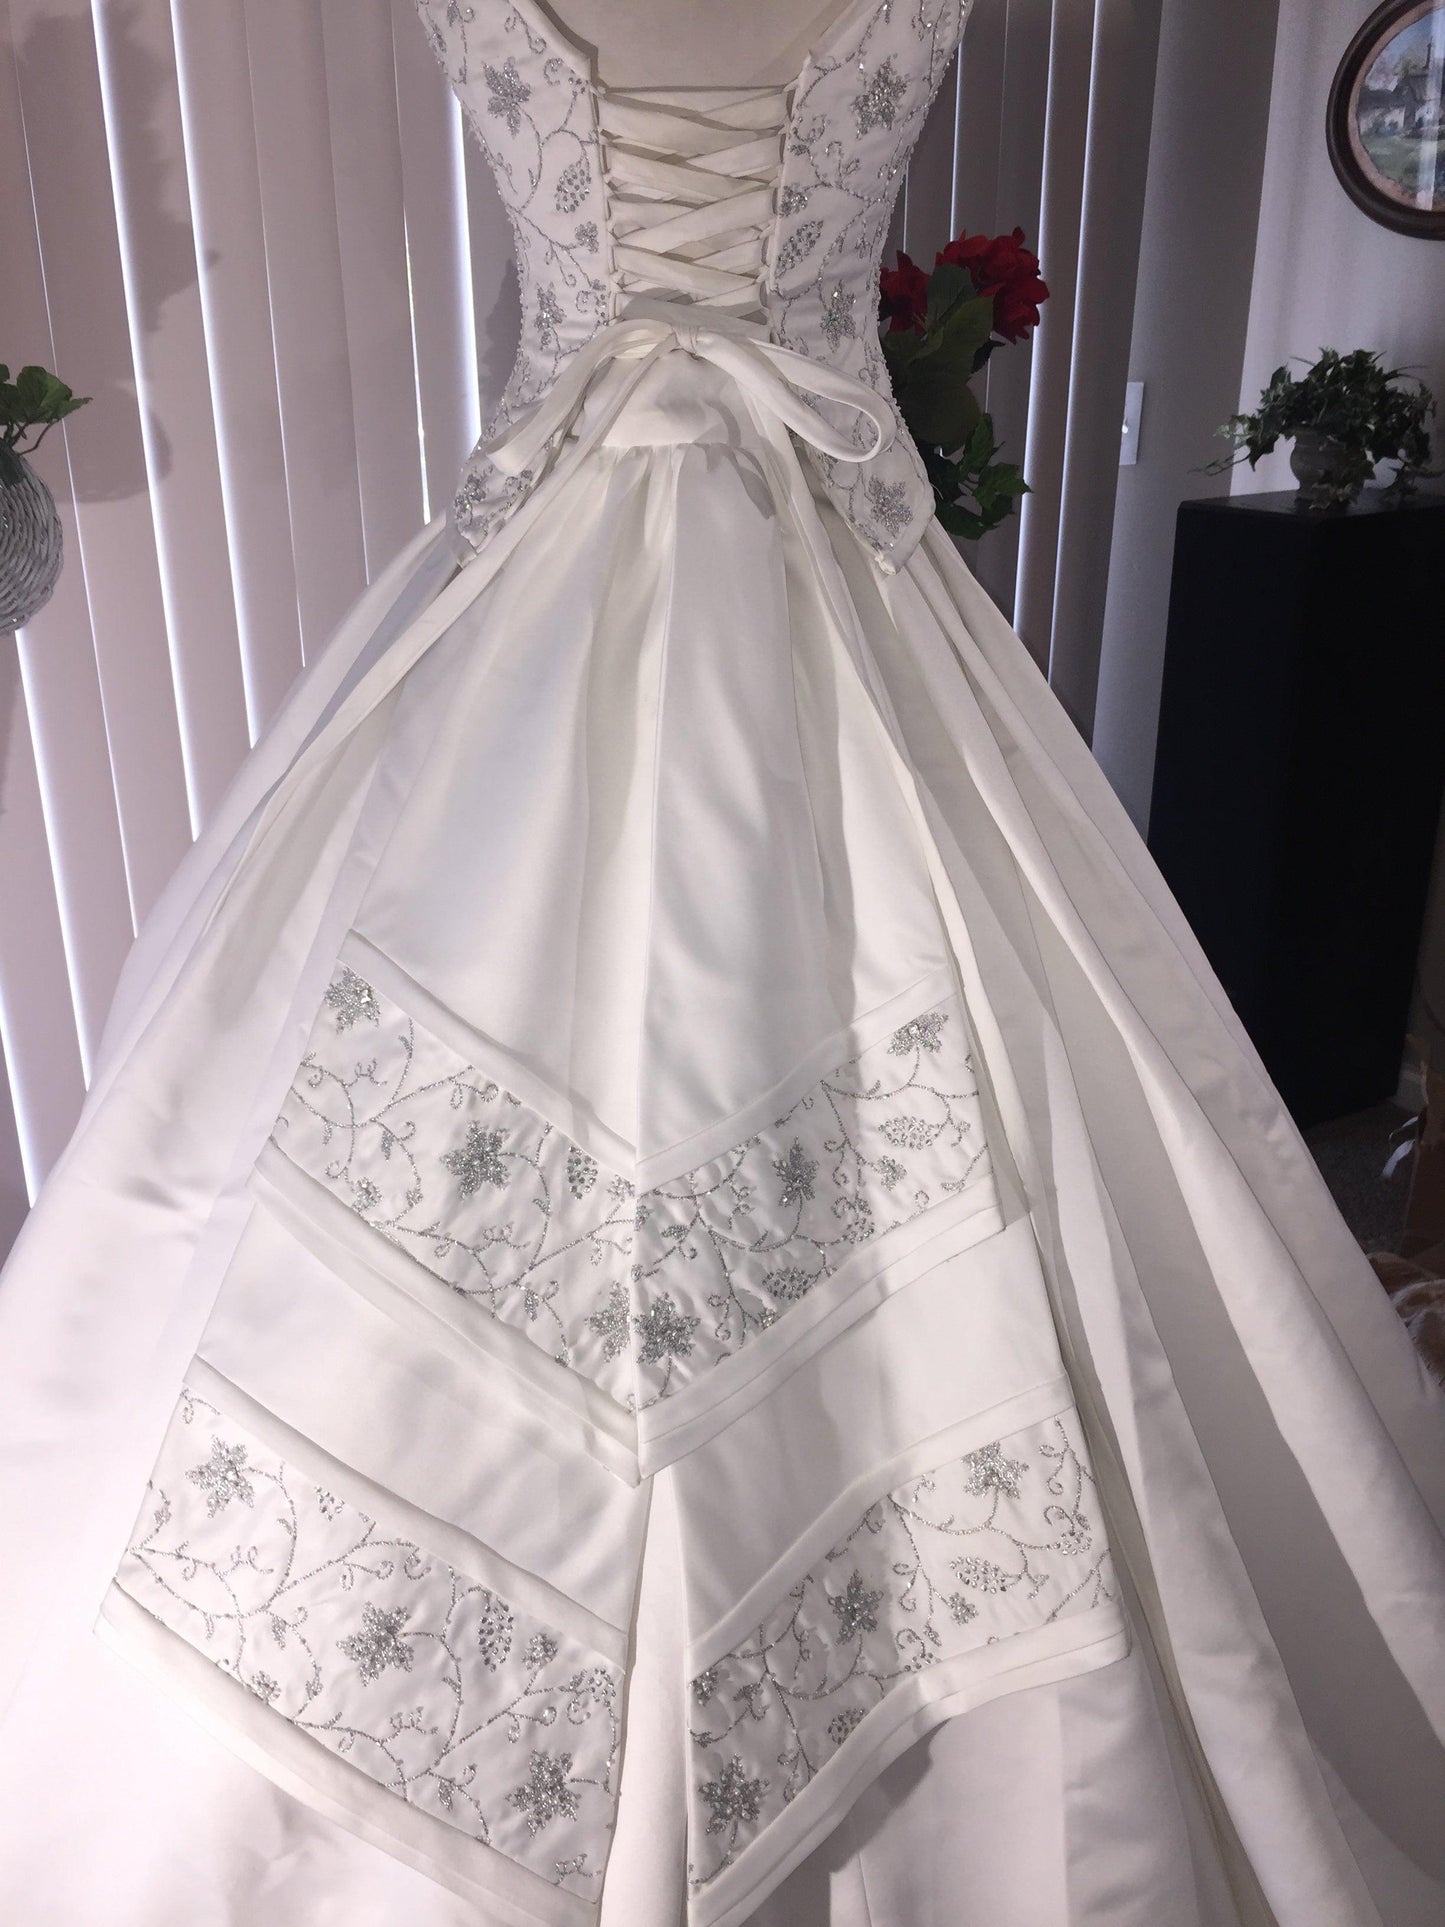 Elizabeth Chevron One of a Kind Wedding Gown - A Walk Thru Time Vintage